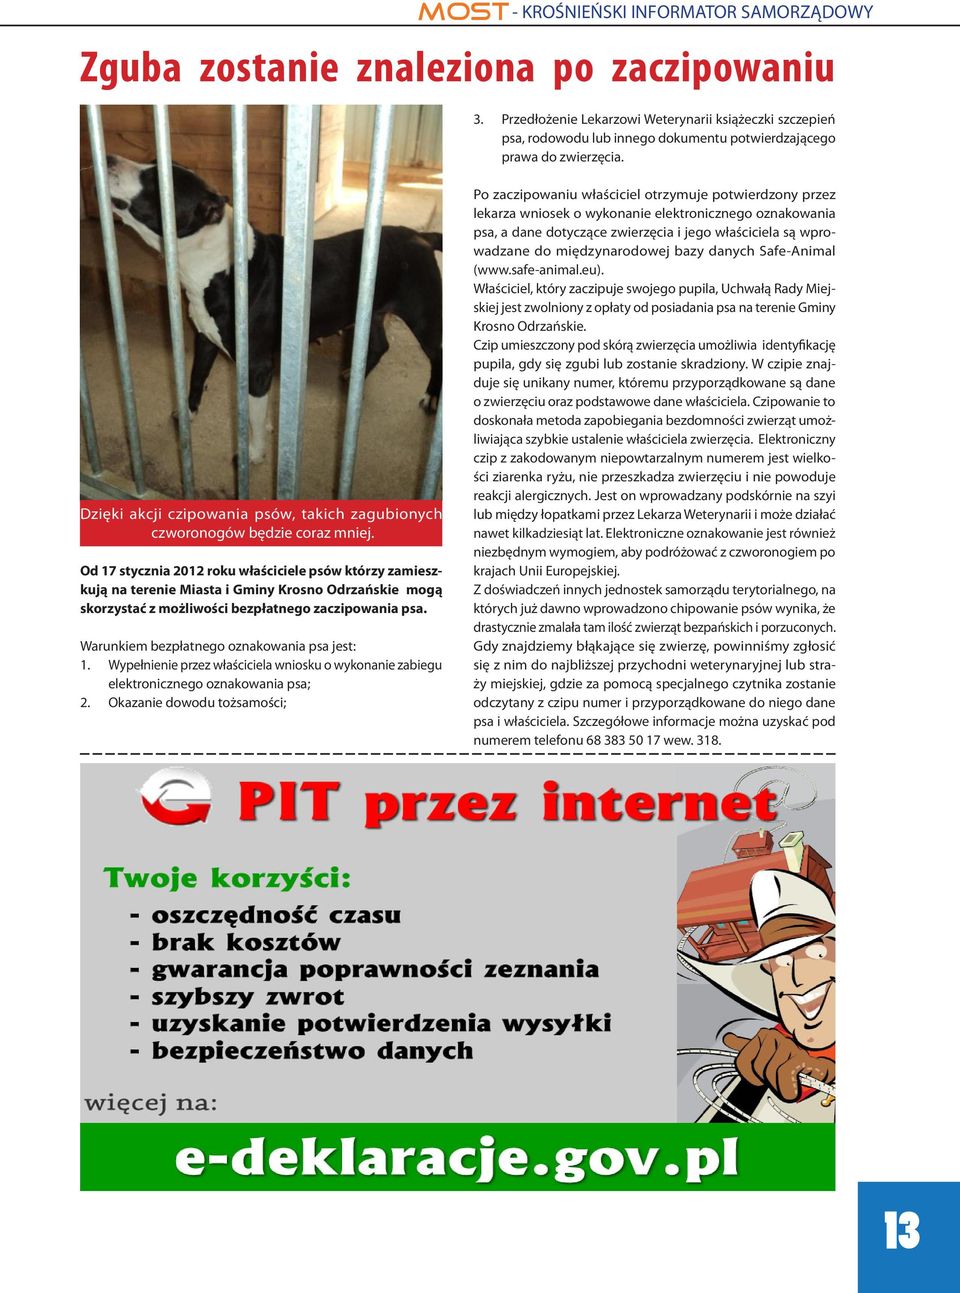 Od 17 stycznia 2012 roku właściciele psów którzy zamieszkują na terenie Miasta i Gminy Krosno Odrzańskie mogą skorzystać z możliwości bezpłatnego zaczipowania psa.